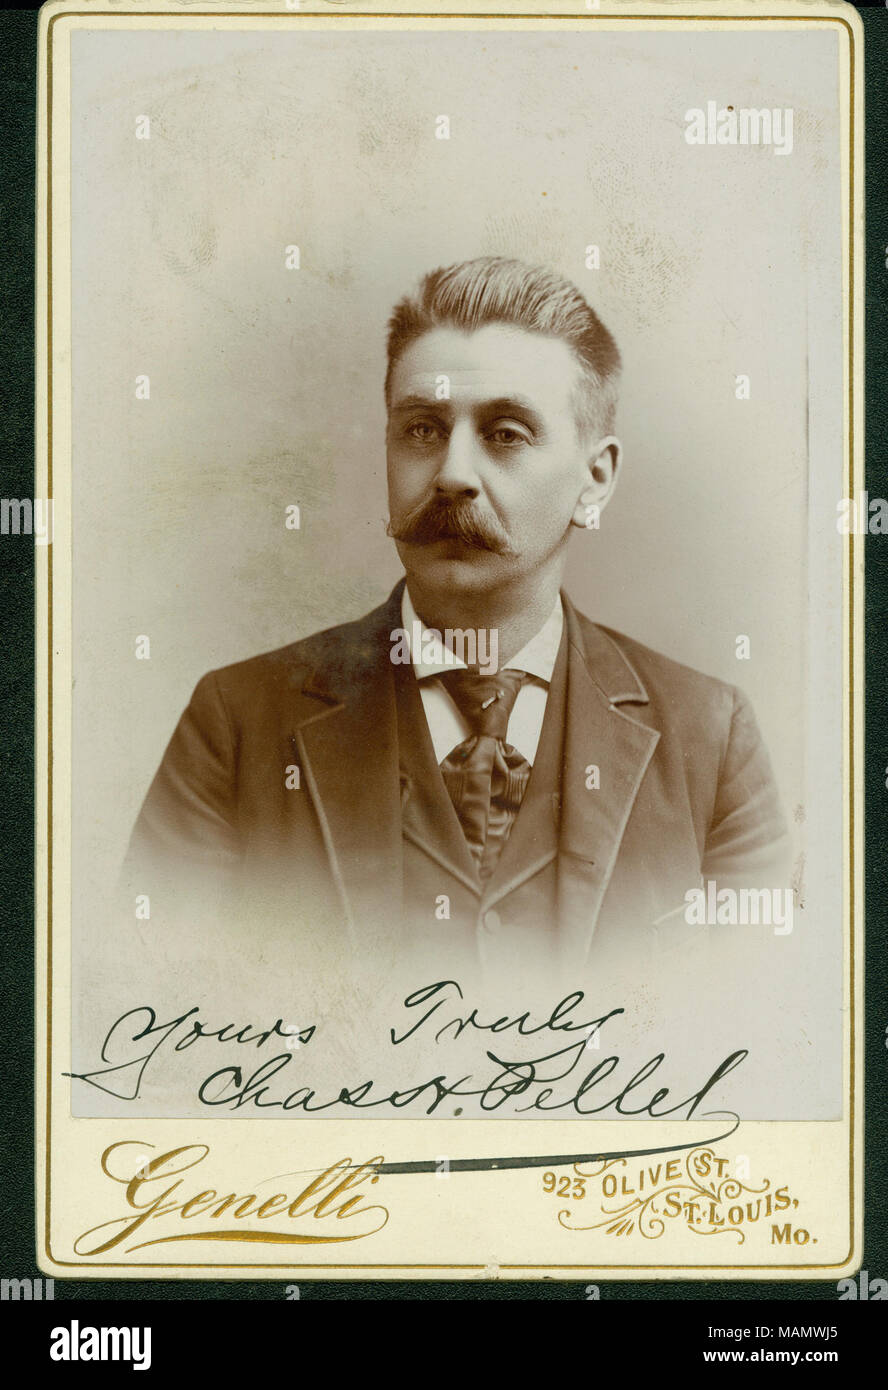 Formale büste Portrait von Charles H. Pellell in Anzug, Weste und Krawatte,  und nach vorn zeigen. "Yours Truly Chas H. Pellel [sic]" (auf der  Unterseite des Bildes geschrieben). "Genelli' und '923 OLIVE